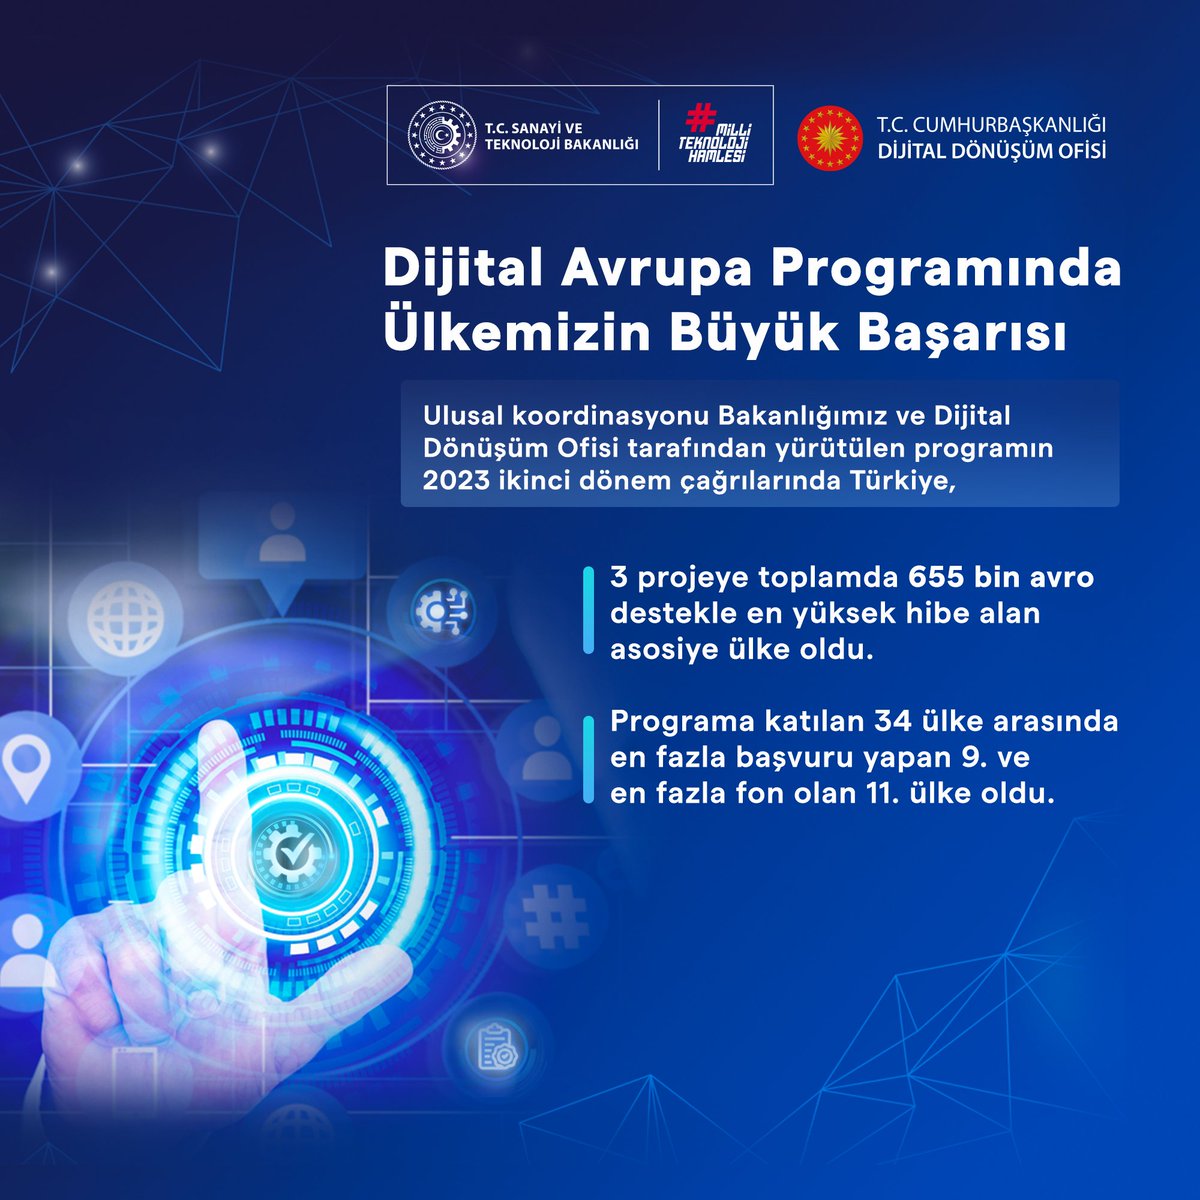 Dijital Avrupa Programında Ülkemizin Büyük Başarısı Ulusal koordinasyonu Bakanlığımız ve Cumhurbaşkanlığı Dijital Dönüşüm Ofisi tarafından yürütülen #DijitalAvrupaProgramı’nın 2023 yılı ikinci dönem çağrılarının sonuçları açıklandı. Çağrılarda ülkemiz büyük bir başarı